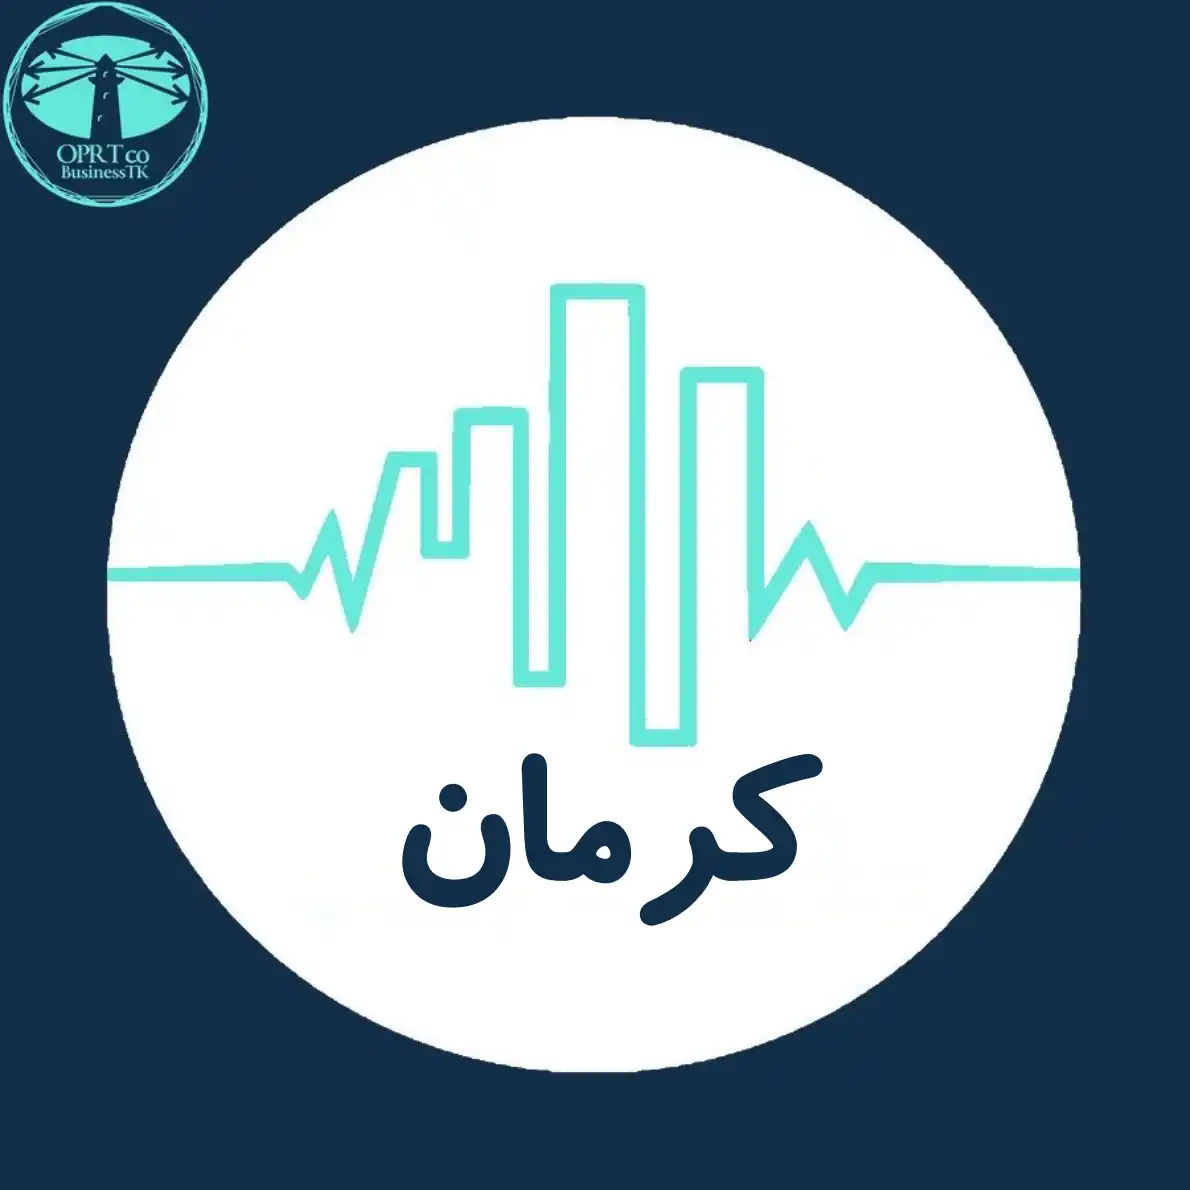 مشاوره مدیریت کرمان - businesstk.com